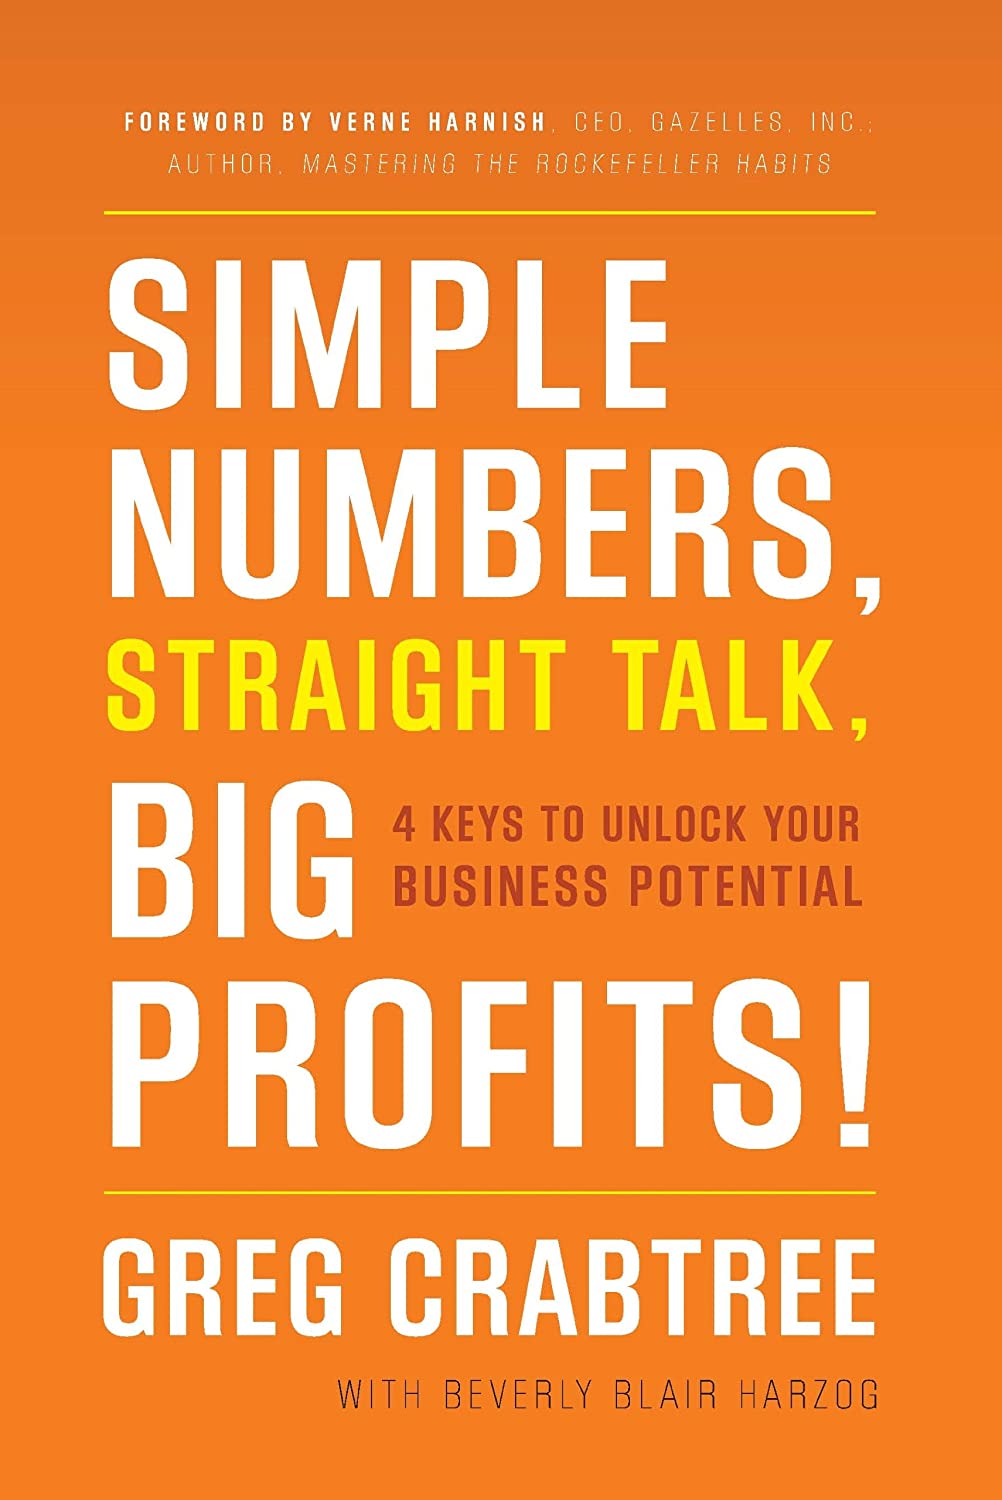 Simple Numbers, Straight Talk, Big Profits: Greg Crabtree